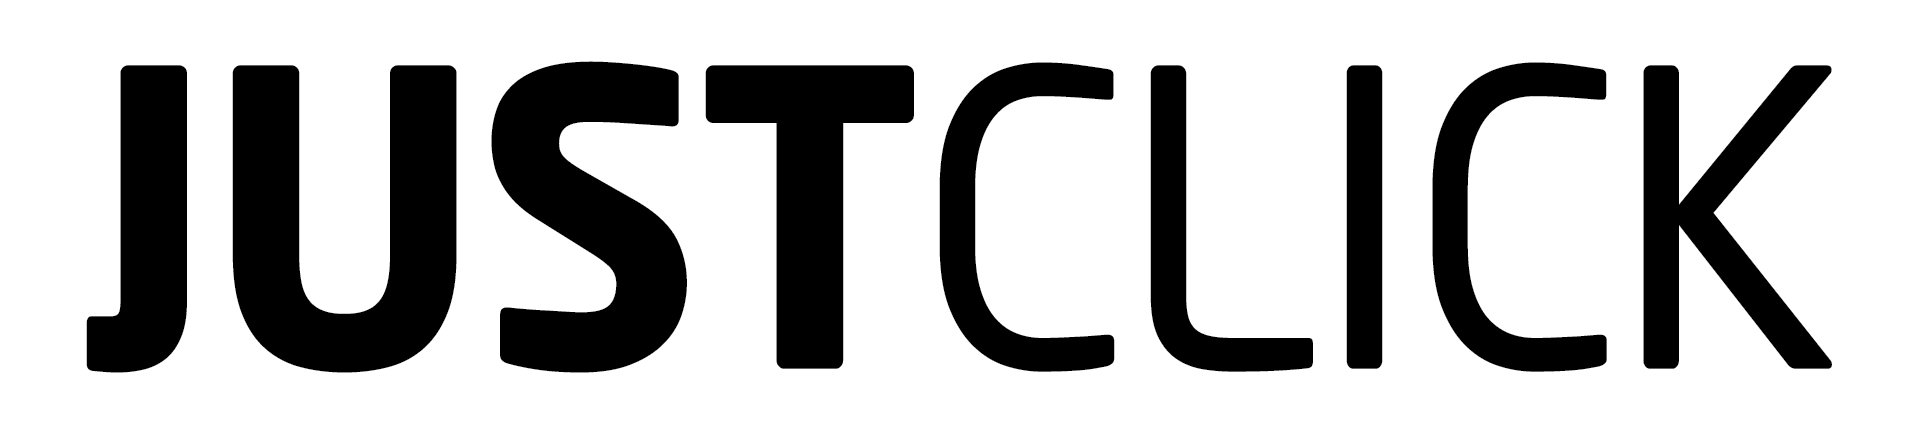 Trademark Logo JUSTCLICK